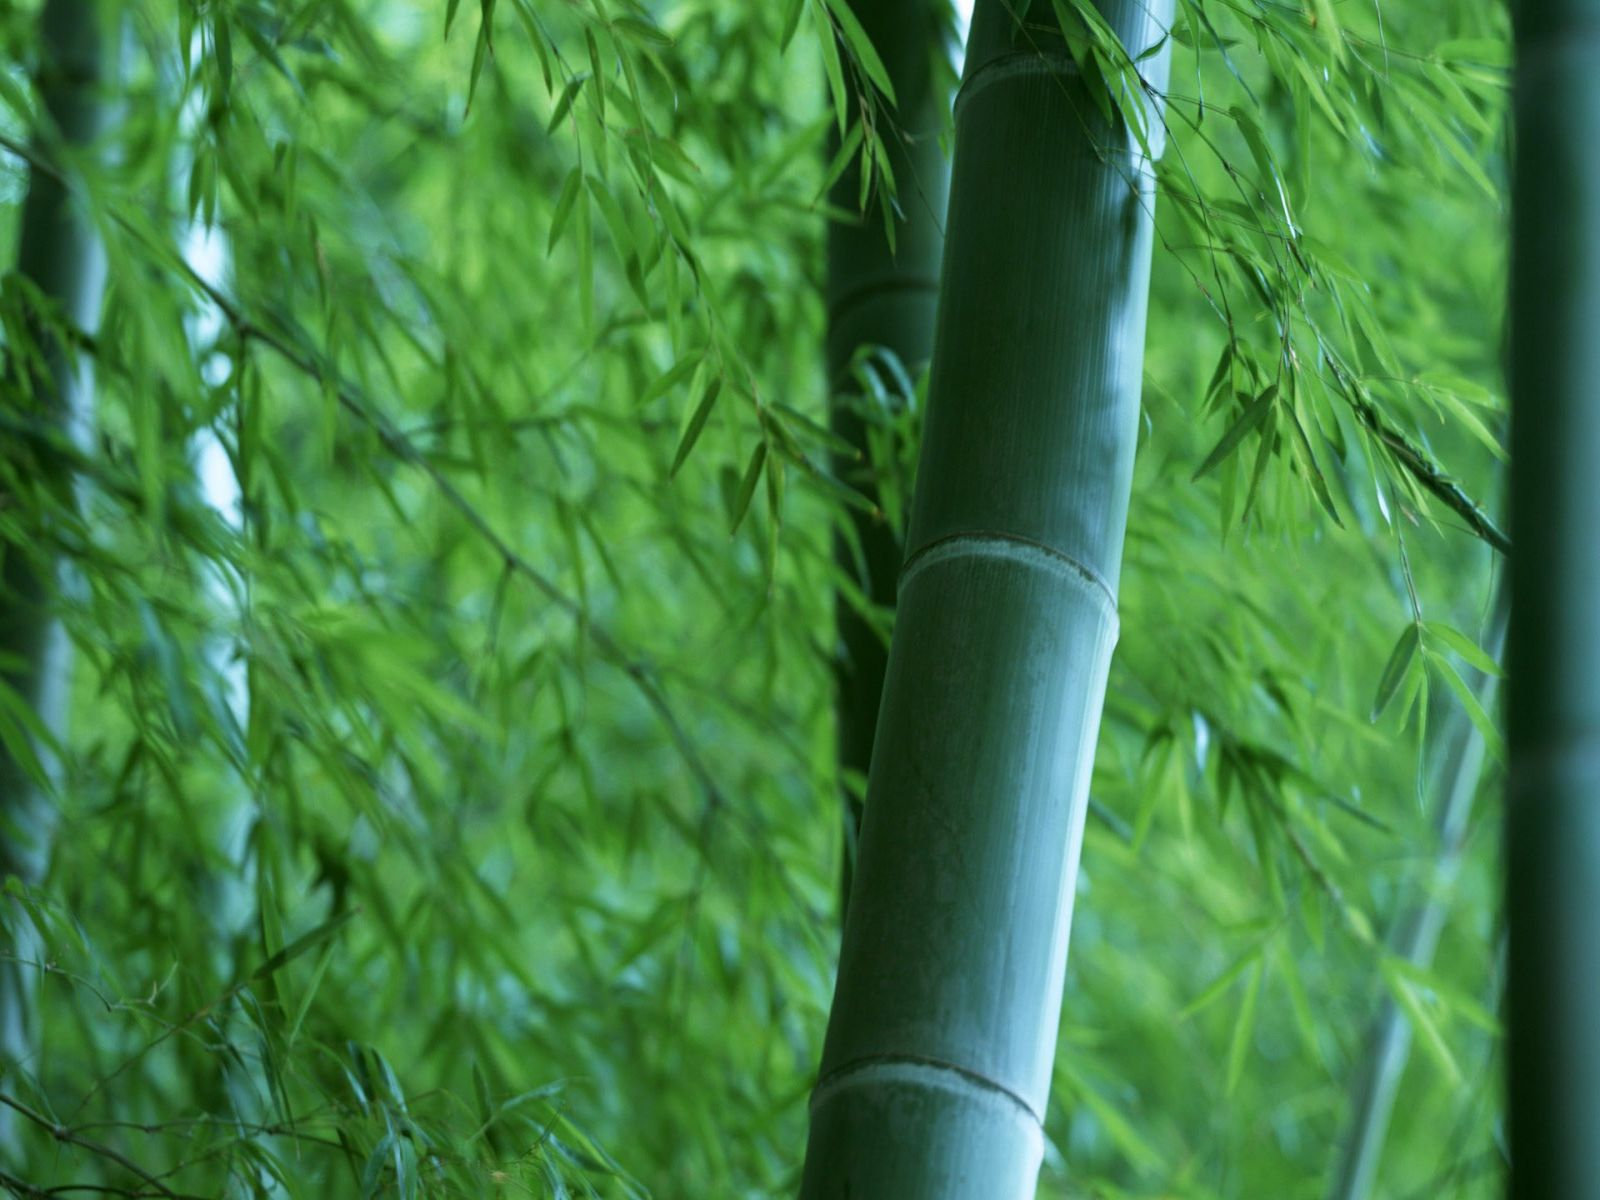 Bamboo Wallpaper X